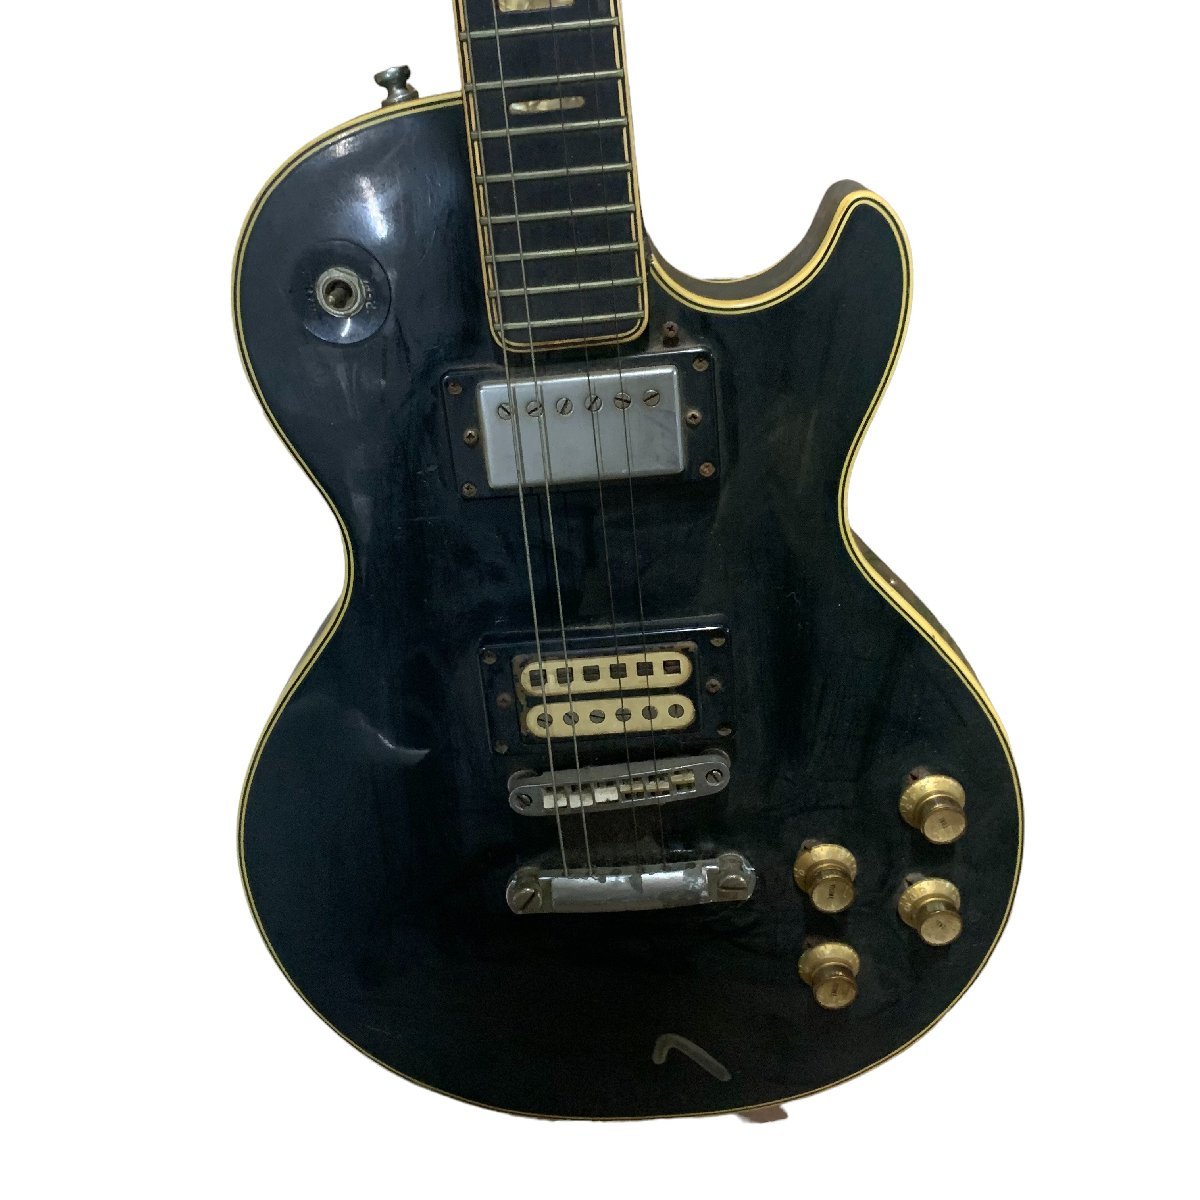 ◆ジャンク品◆グレコ GRECO カスタム レスポール エレキギター ブラック 黒 楽器 ハードケース付 X51958N_画像10